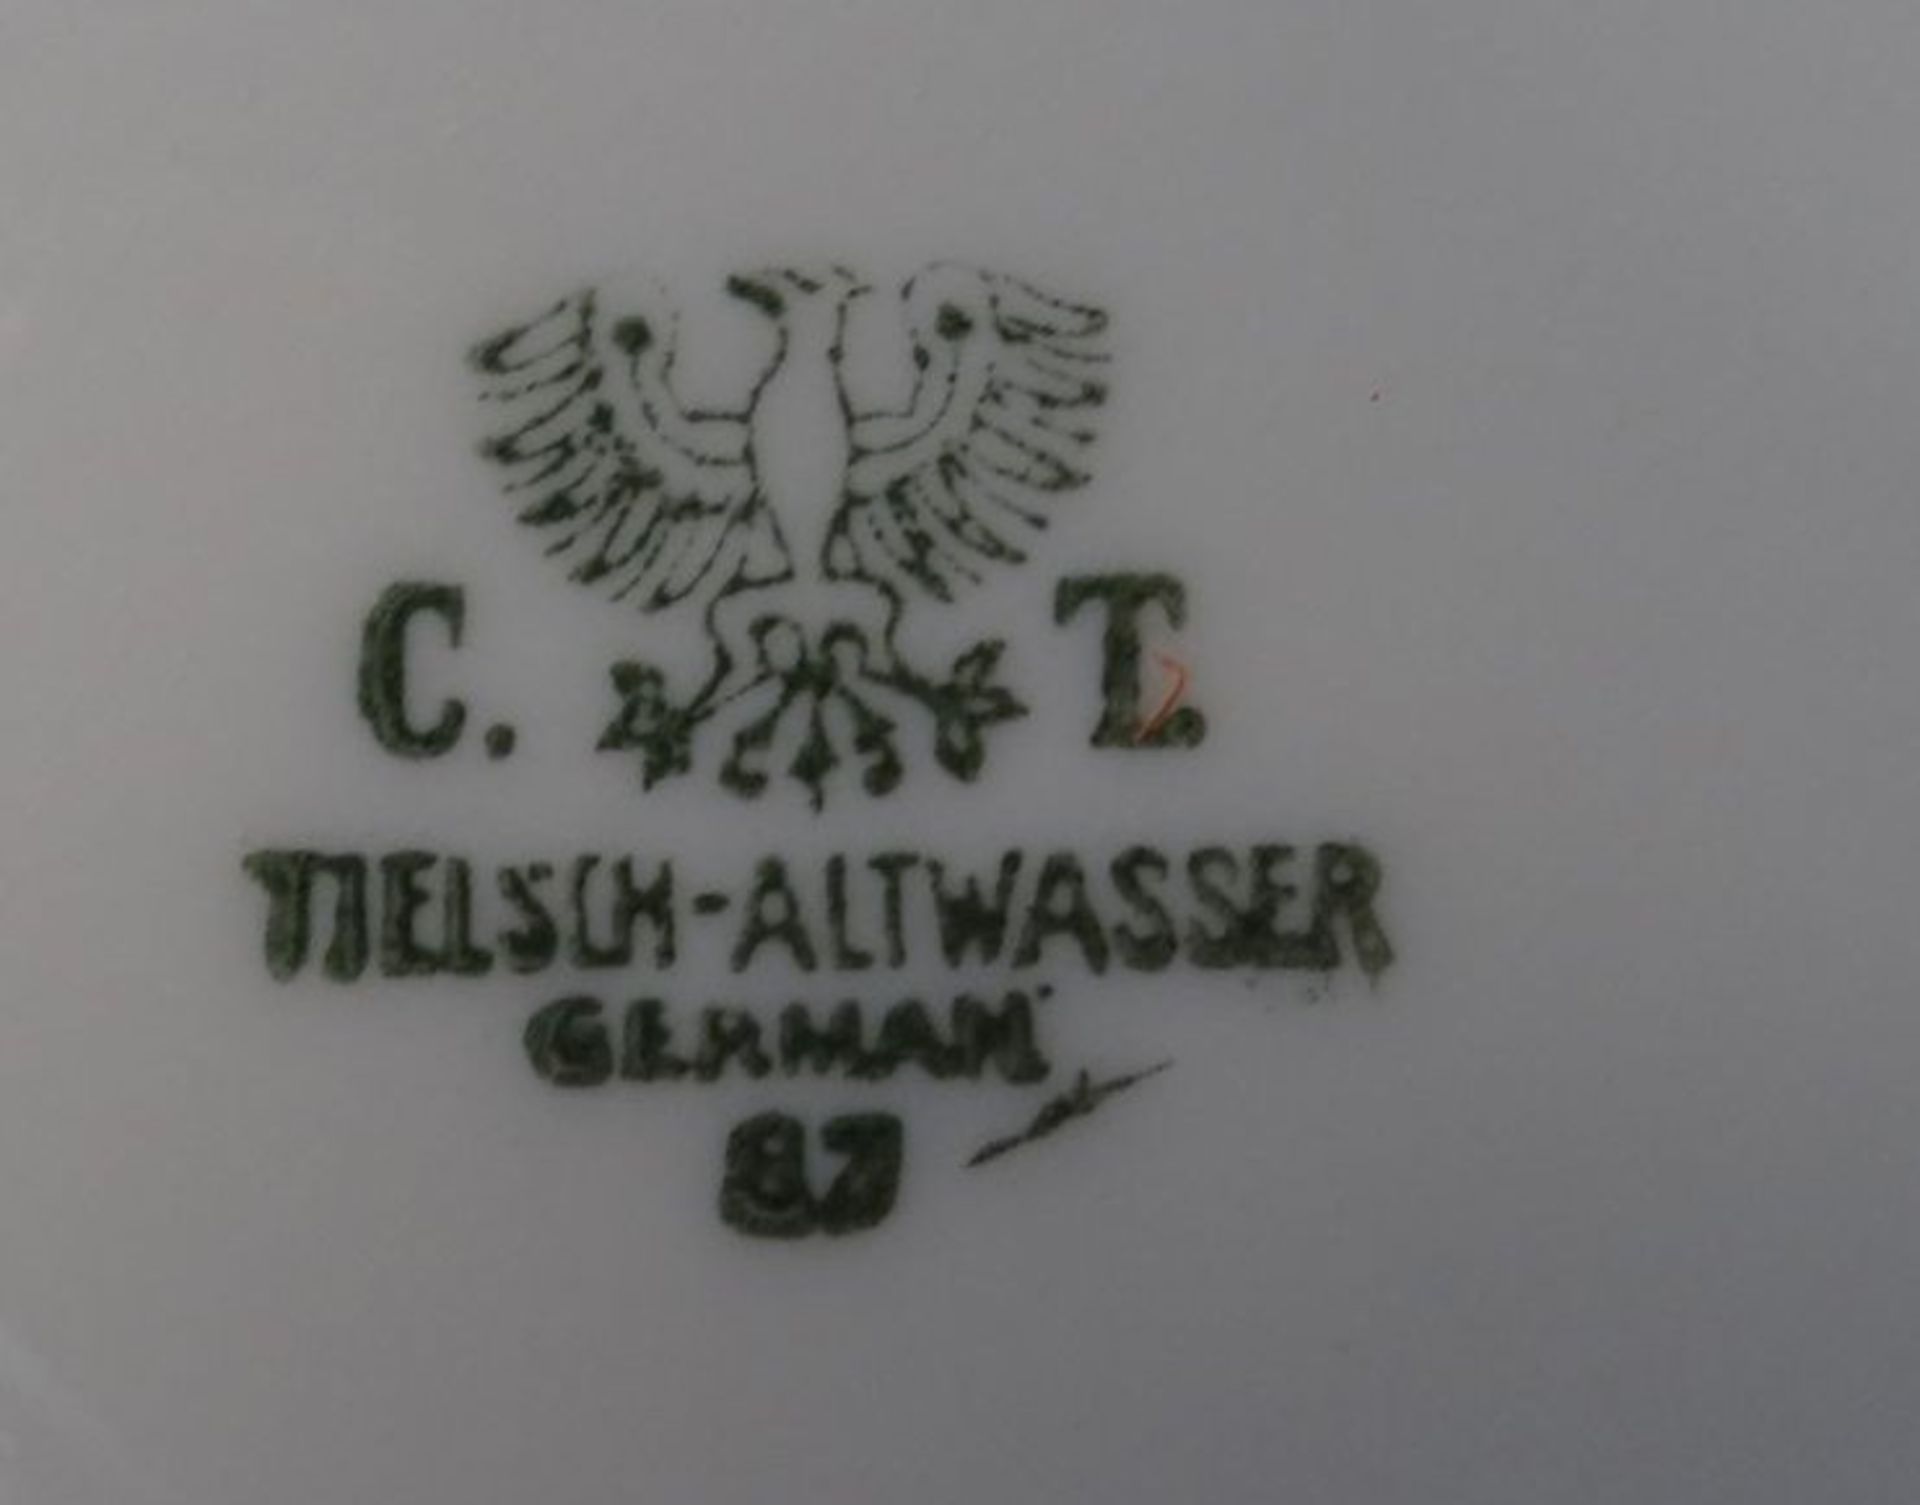 46 Serviceteile, "C. Tielsch" Altwasser, Golddekor, 5 Teile bestossen, rissig etc. - Bild 8 aus 8